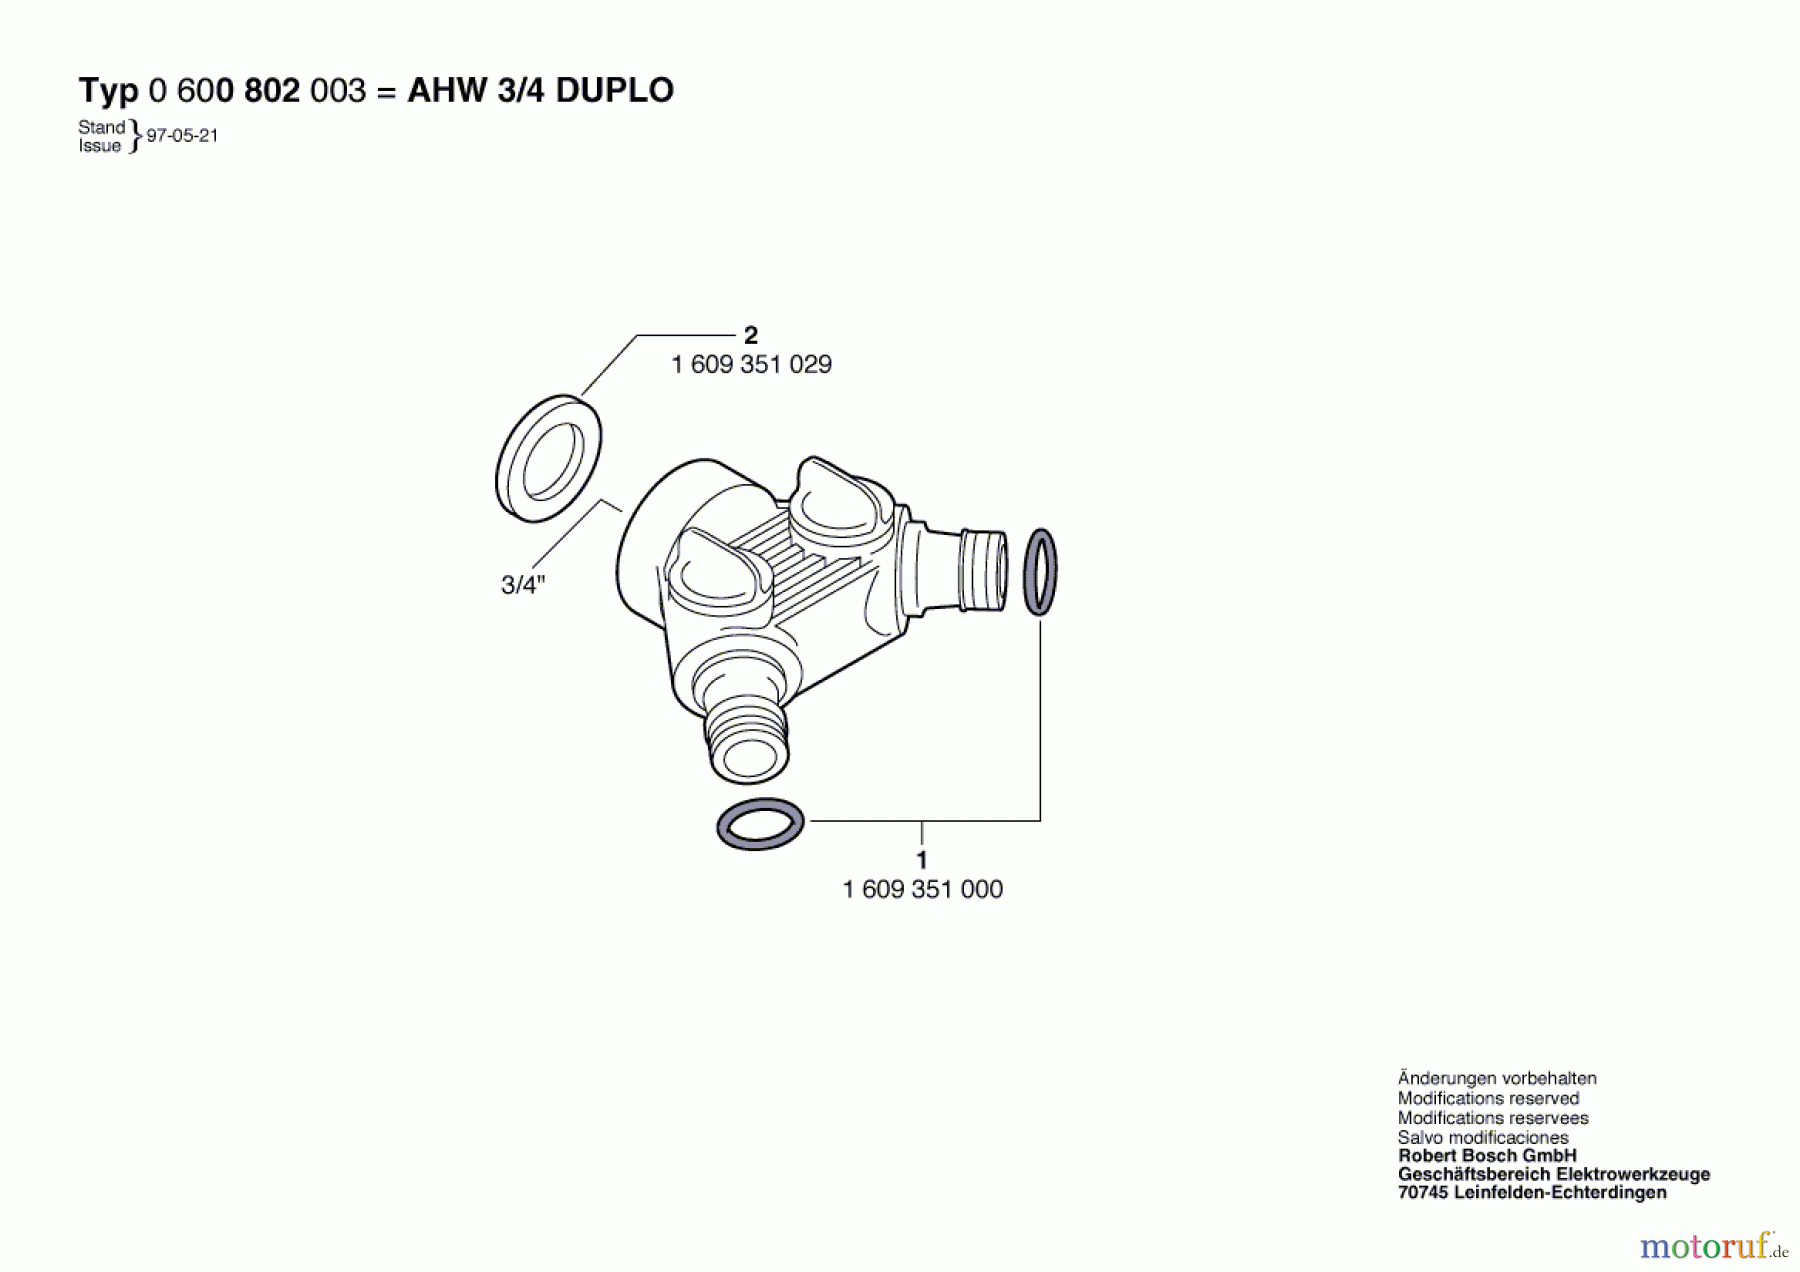  Bosch Wassertechnik Hahnanschlussstück AHW 3/4 DUPLO Seite 1